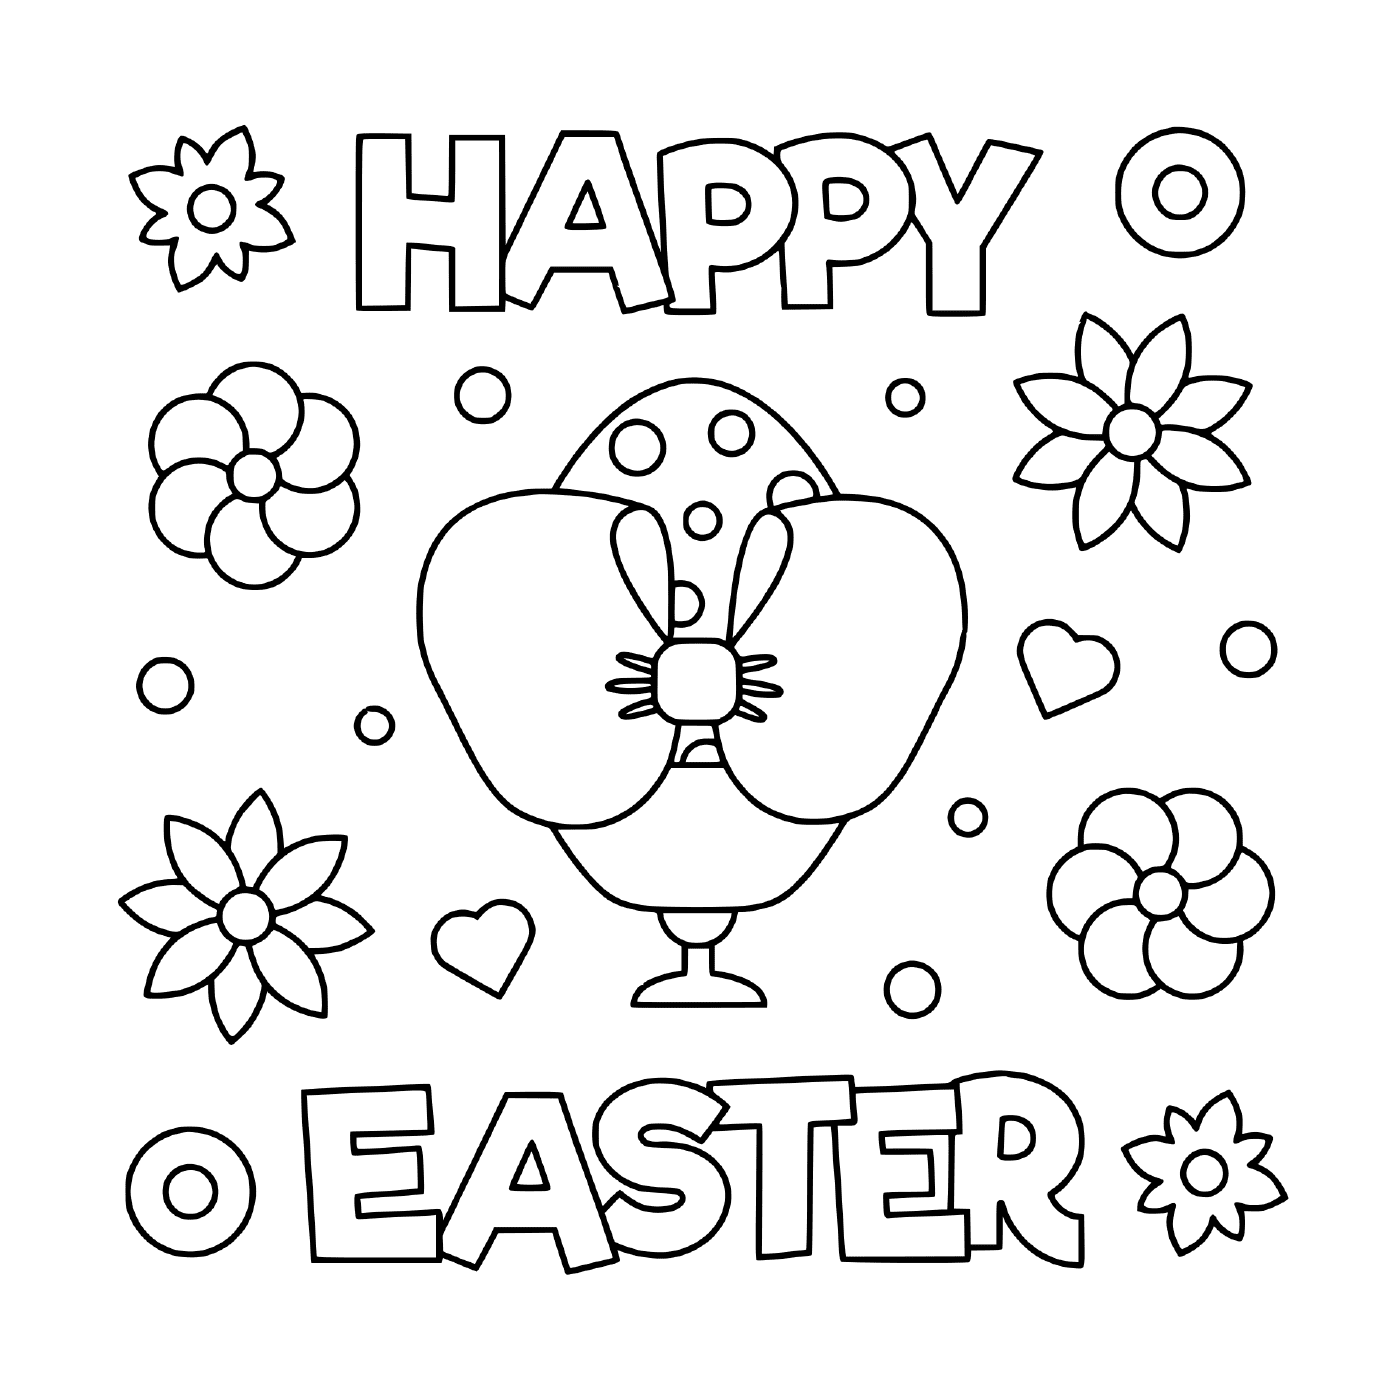  Feliz Ilustración de Pascua 